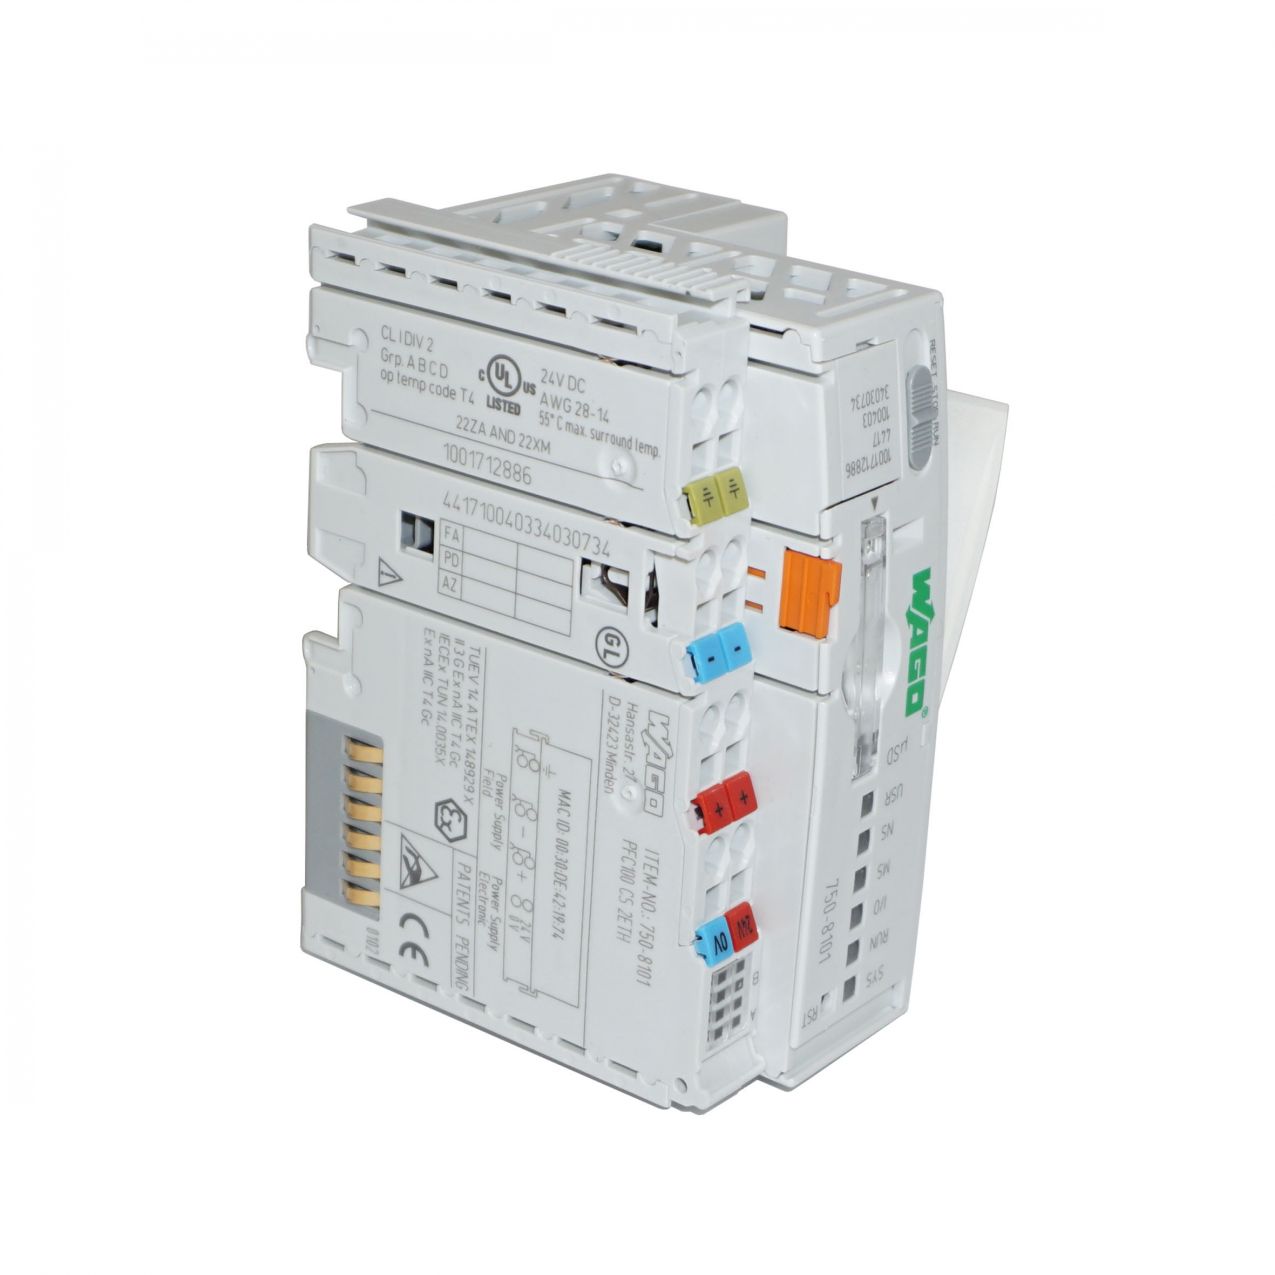 0005-8002-220 Прибор управления доильной установки Ethernet Fieldbus Controller